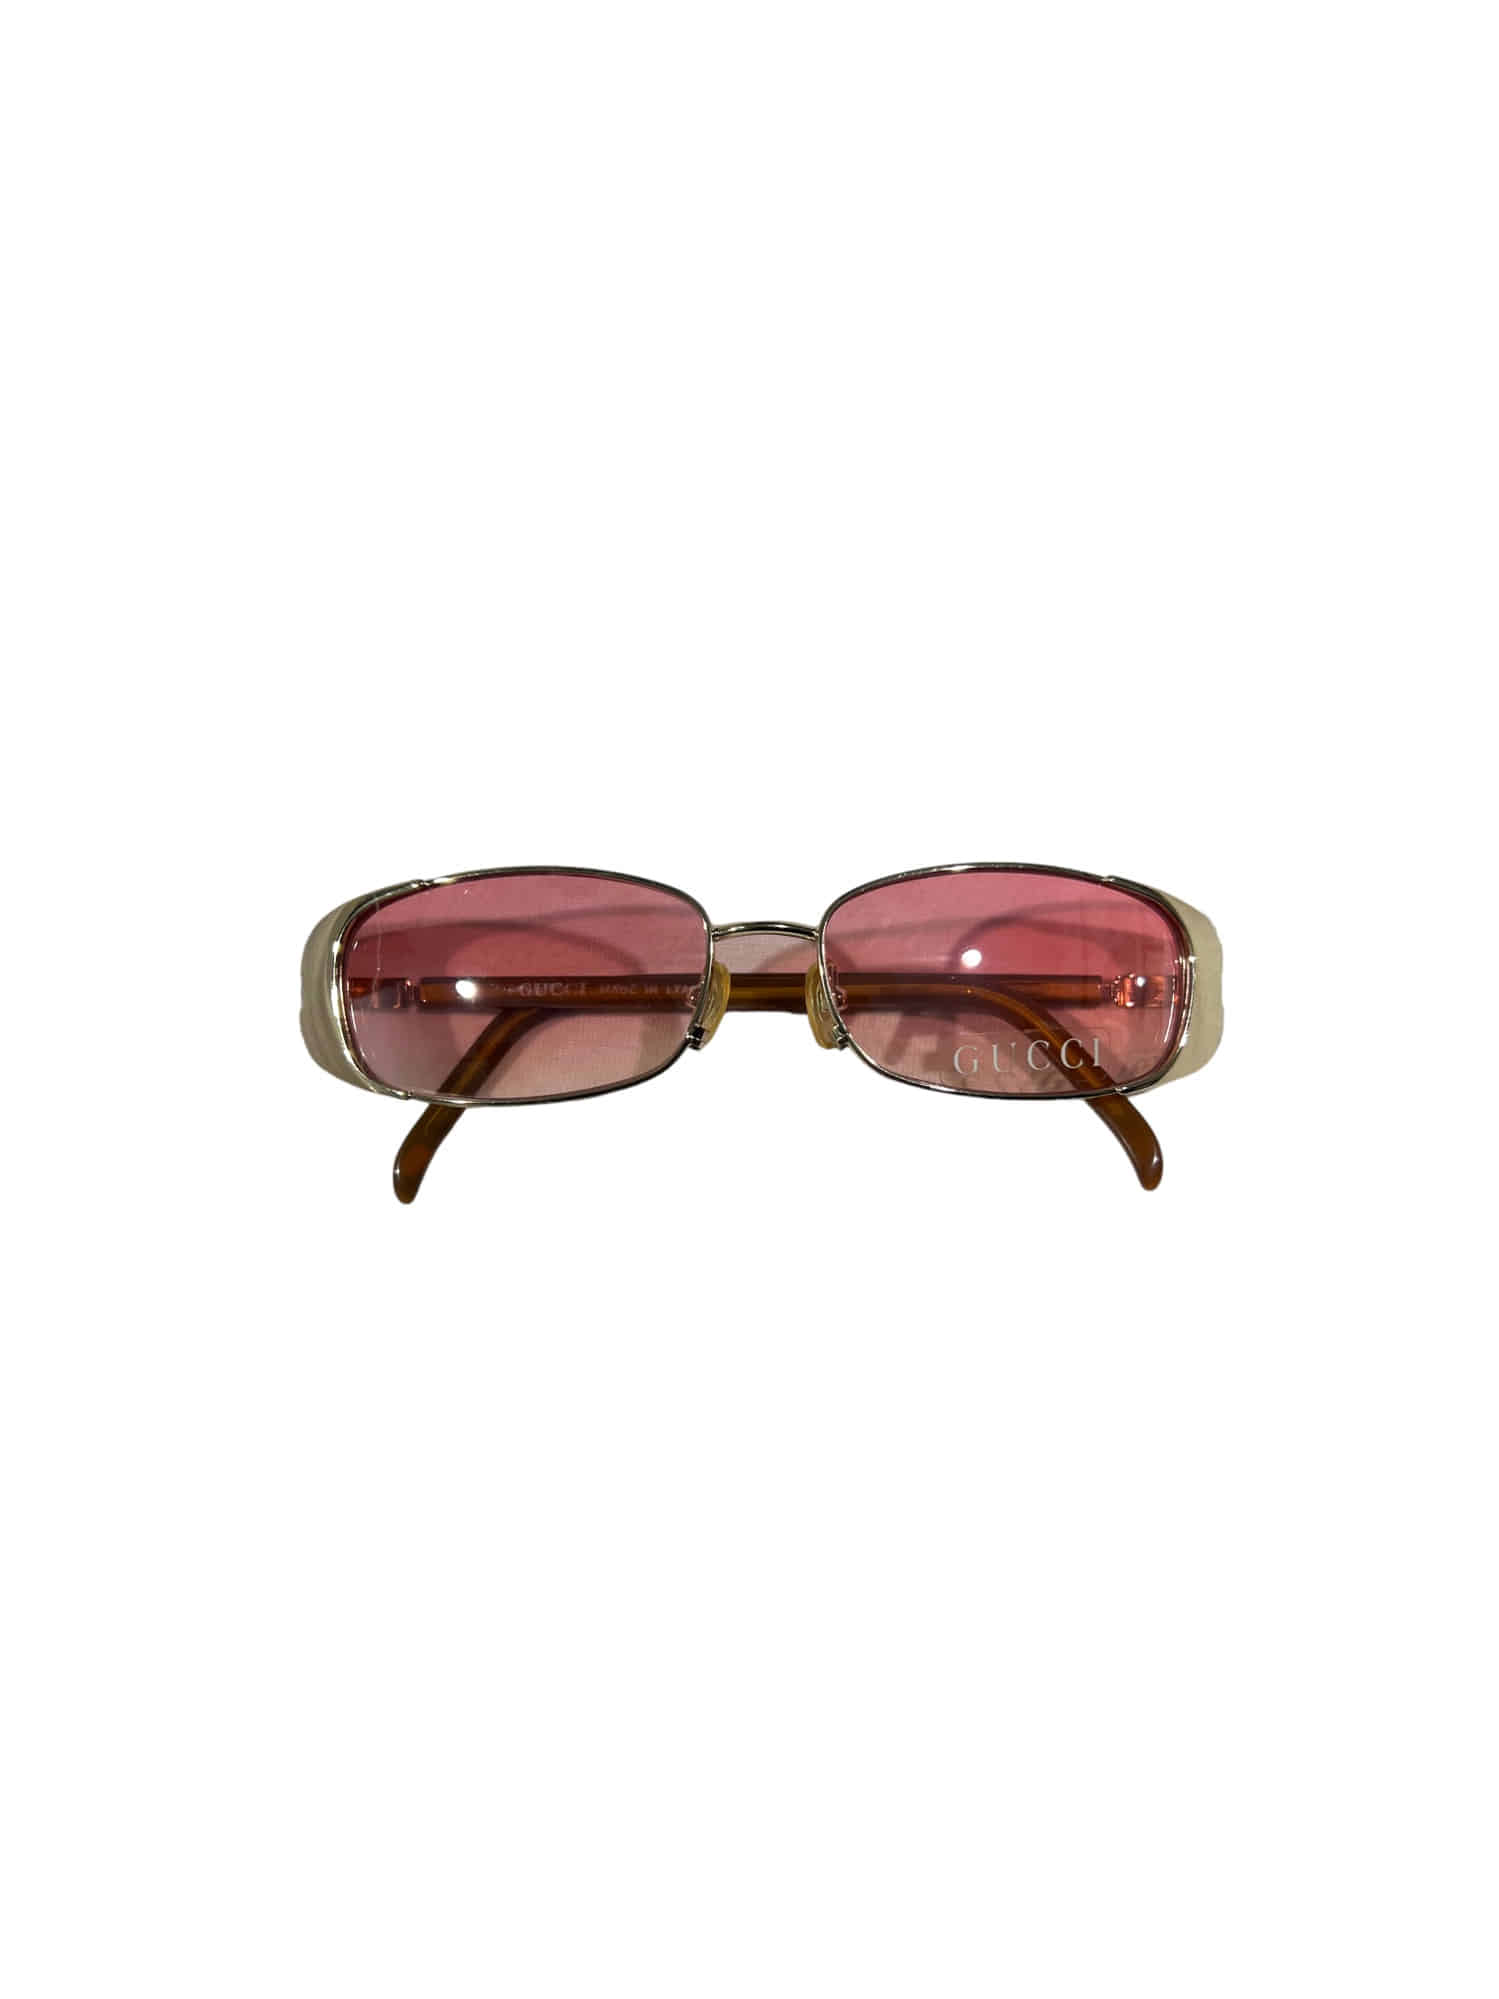 Old Gucci Vintage Sungalsses ( pink lens )